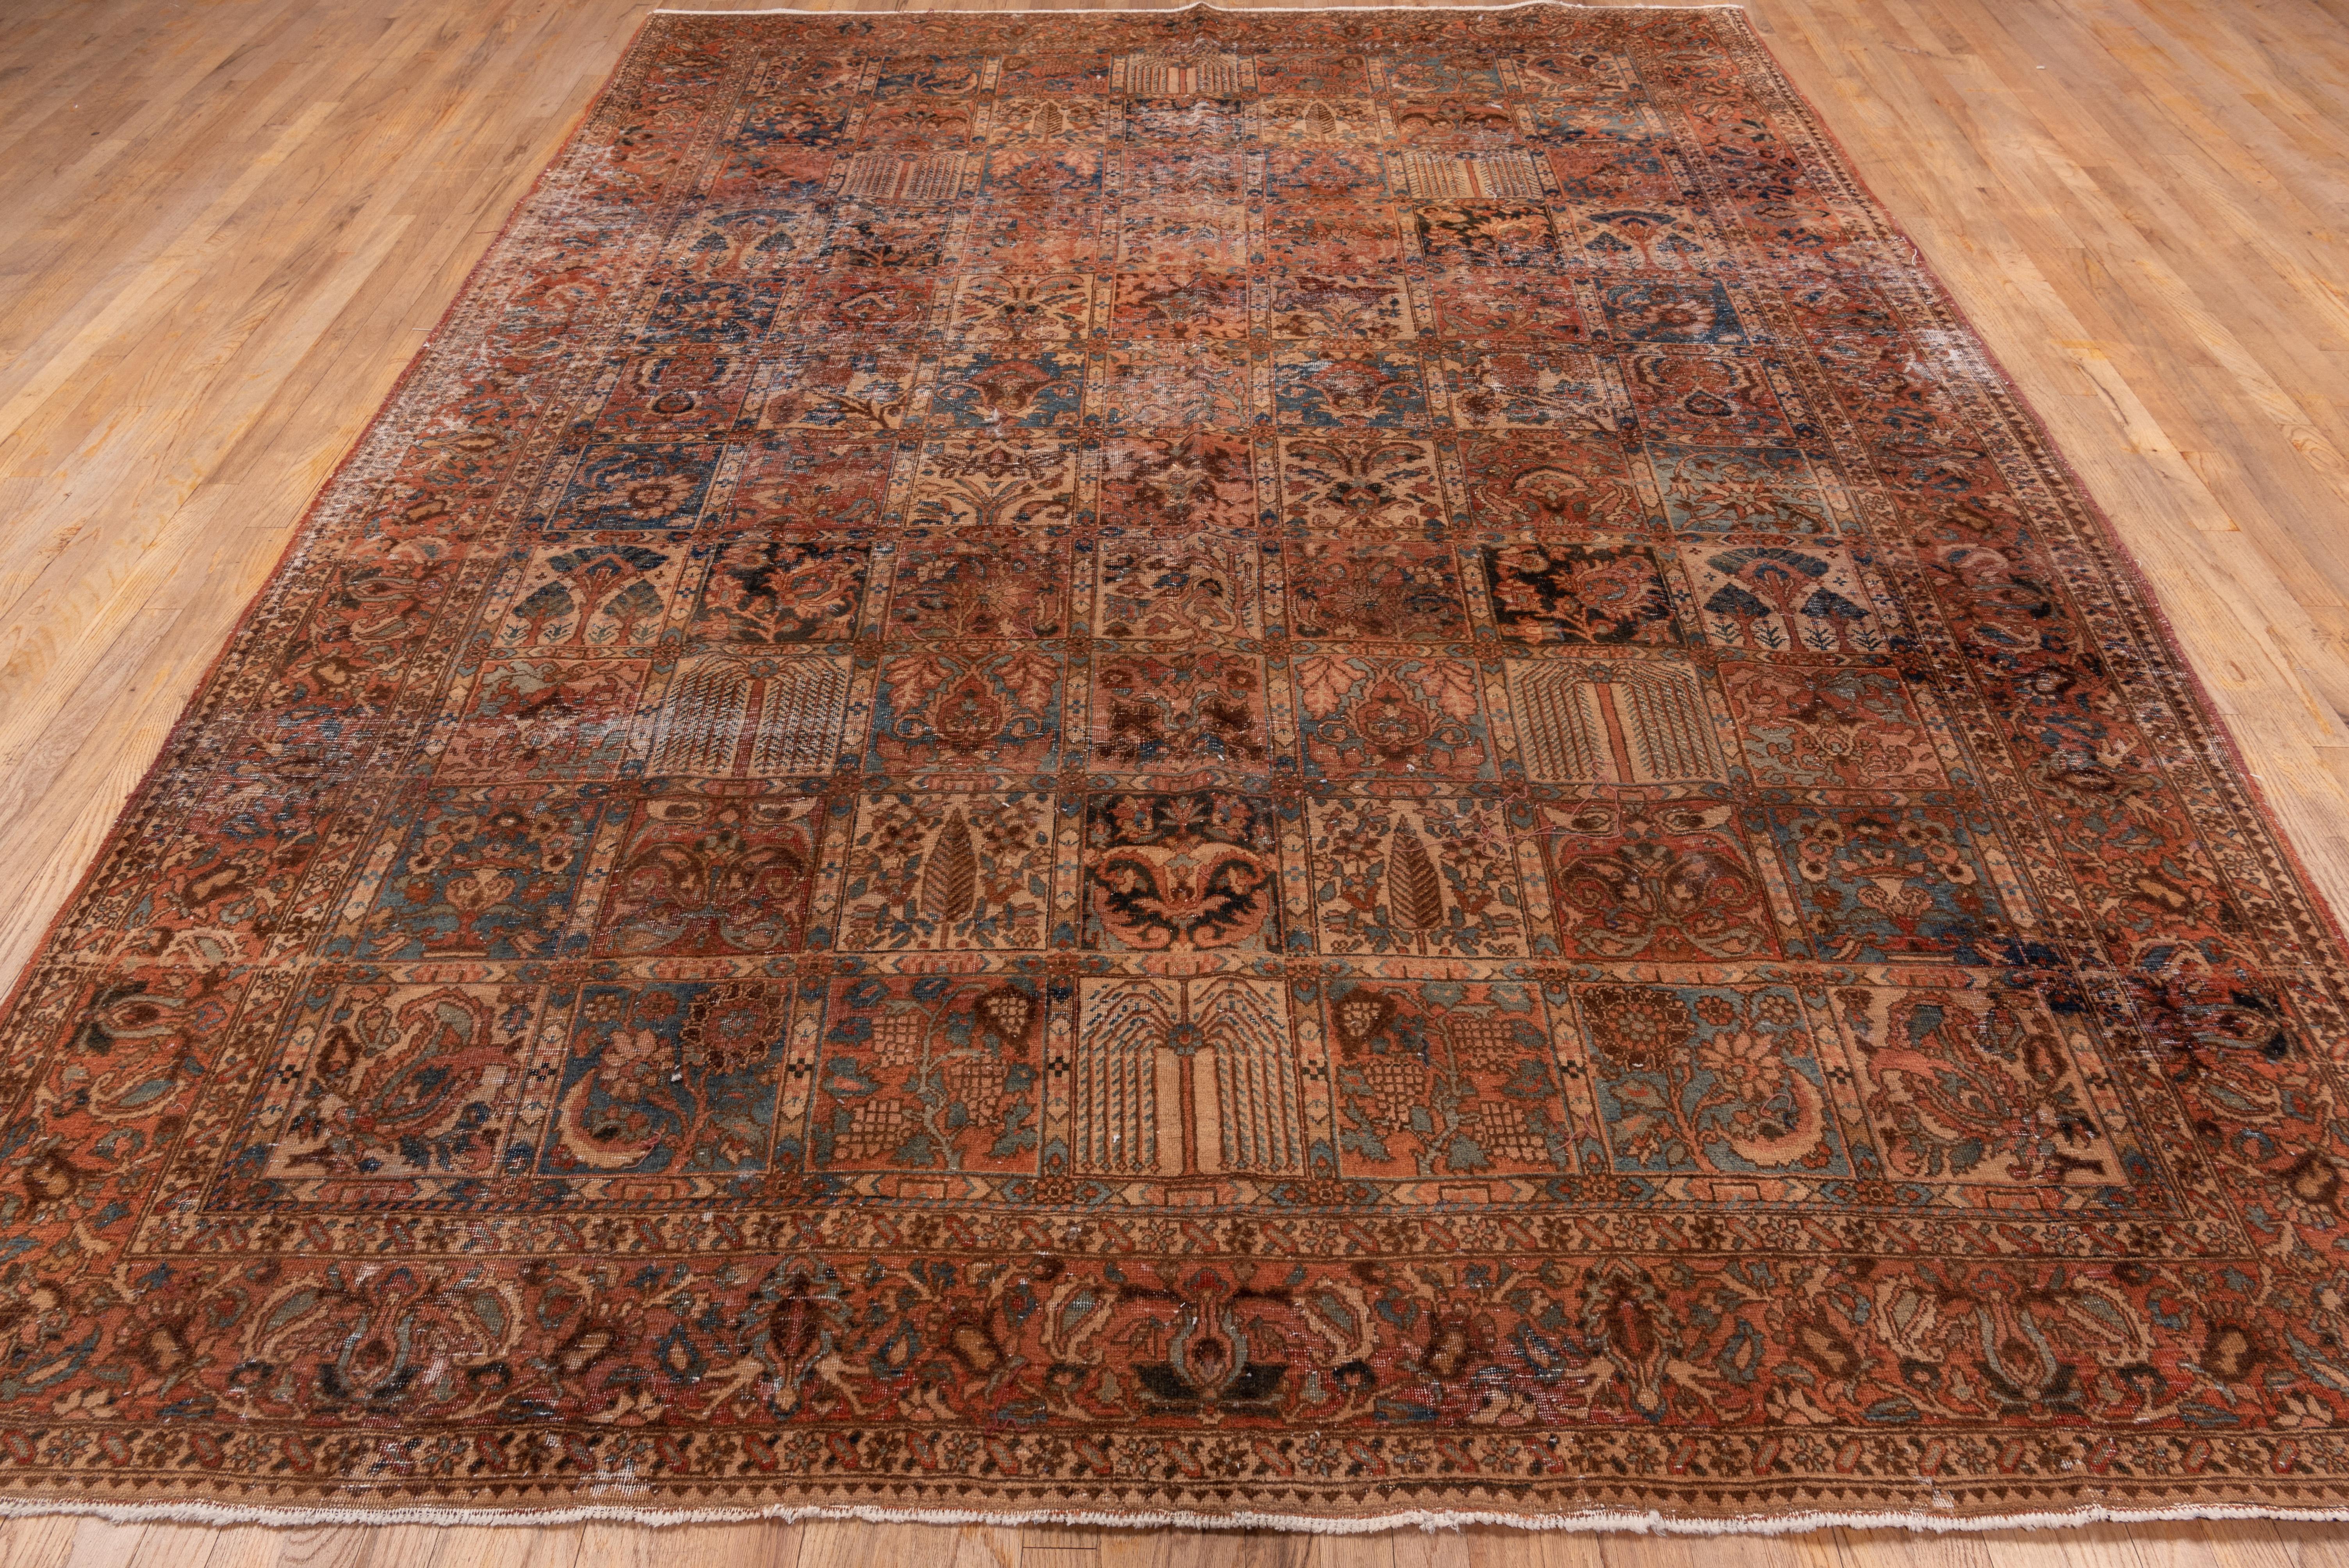 
Les tapis Bakhtiari, également appelés tapis Bakhtiar ou tapis Bakhtiari, sont un type de tapis persan originaire de la région de la tribu Bakhtiari, dans le sud-ouest de l'Iran. Les tapis Bakhtiari sont tissés à la main selon une technique de